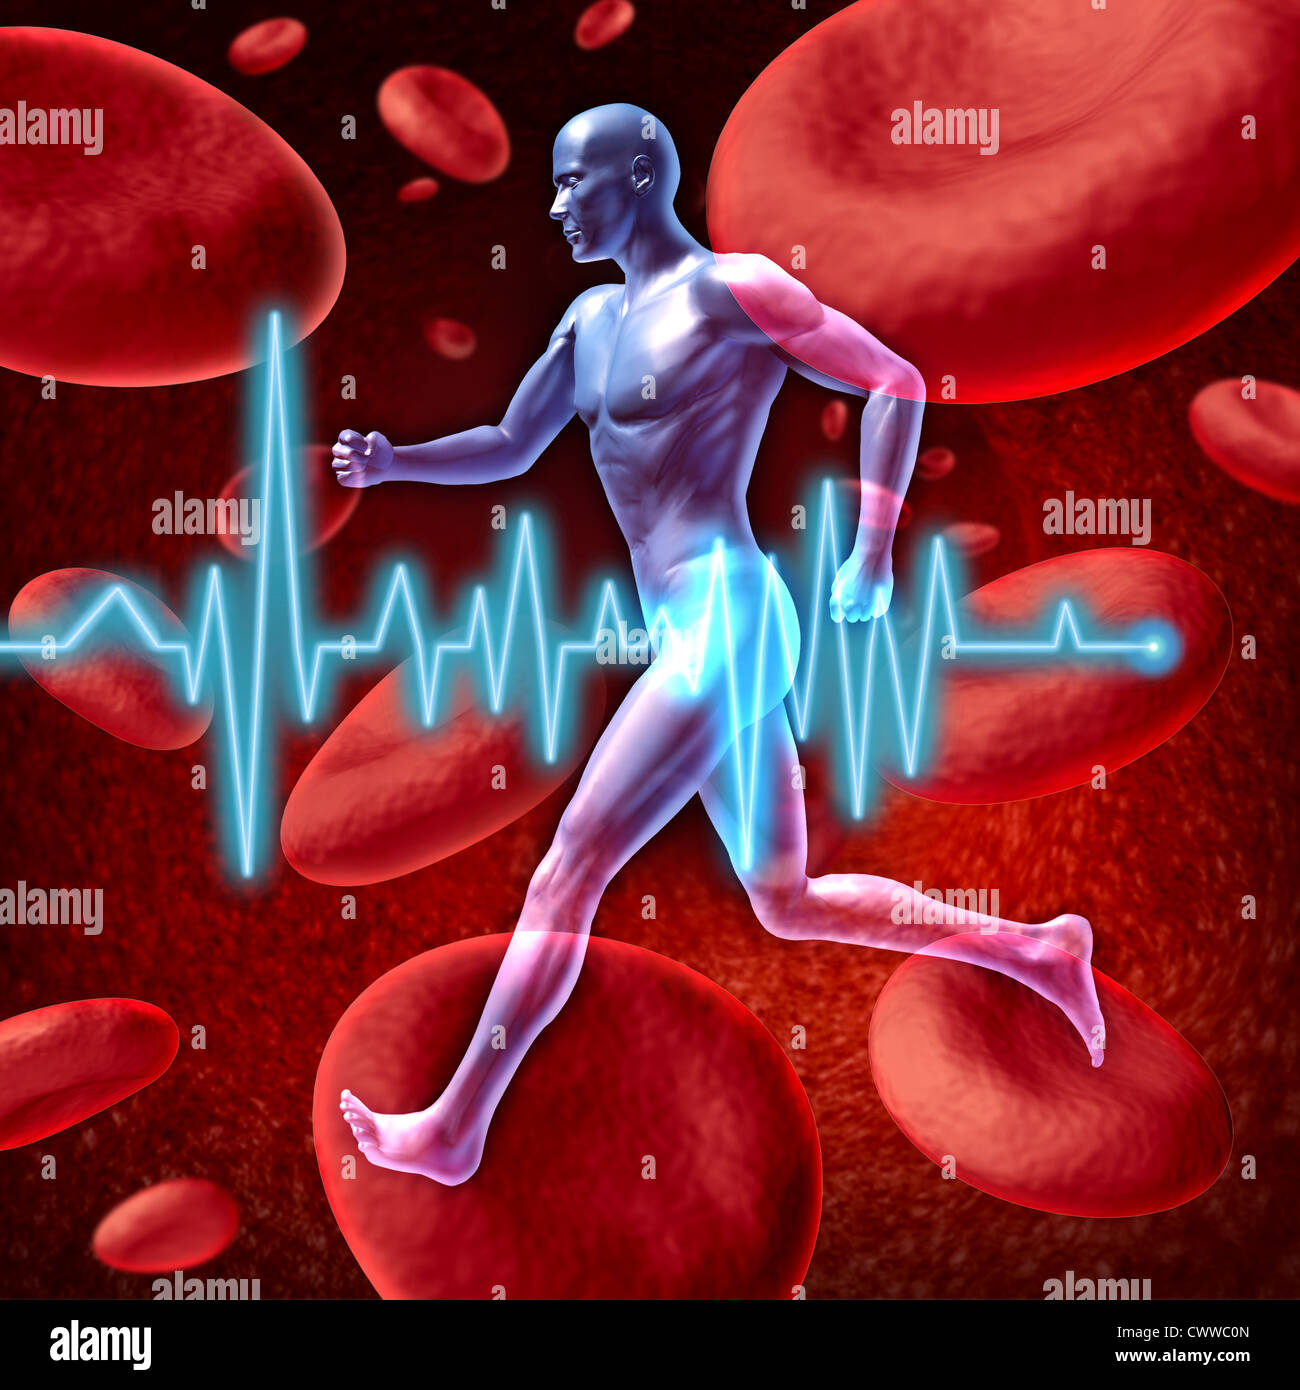 Umano circolazione cardiovascolare rappresentato da un uomo con un background di cellule rosse del sangue che fluisce attraverso una arteria che mostra il concetto di medico sistema circolatorio che è ben ossigenata. Foto Stock